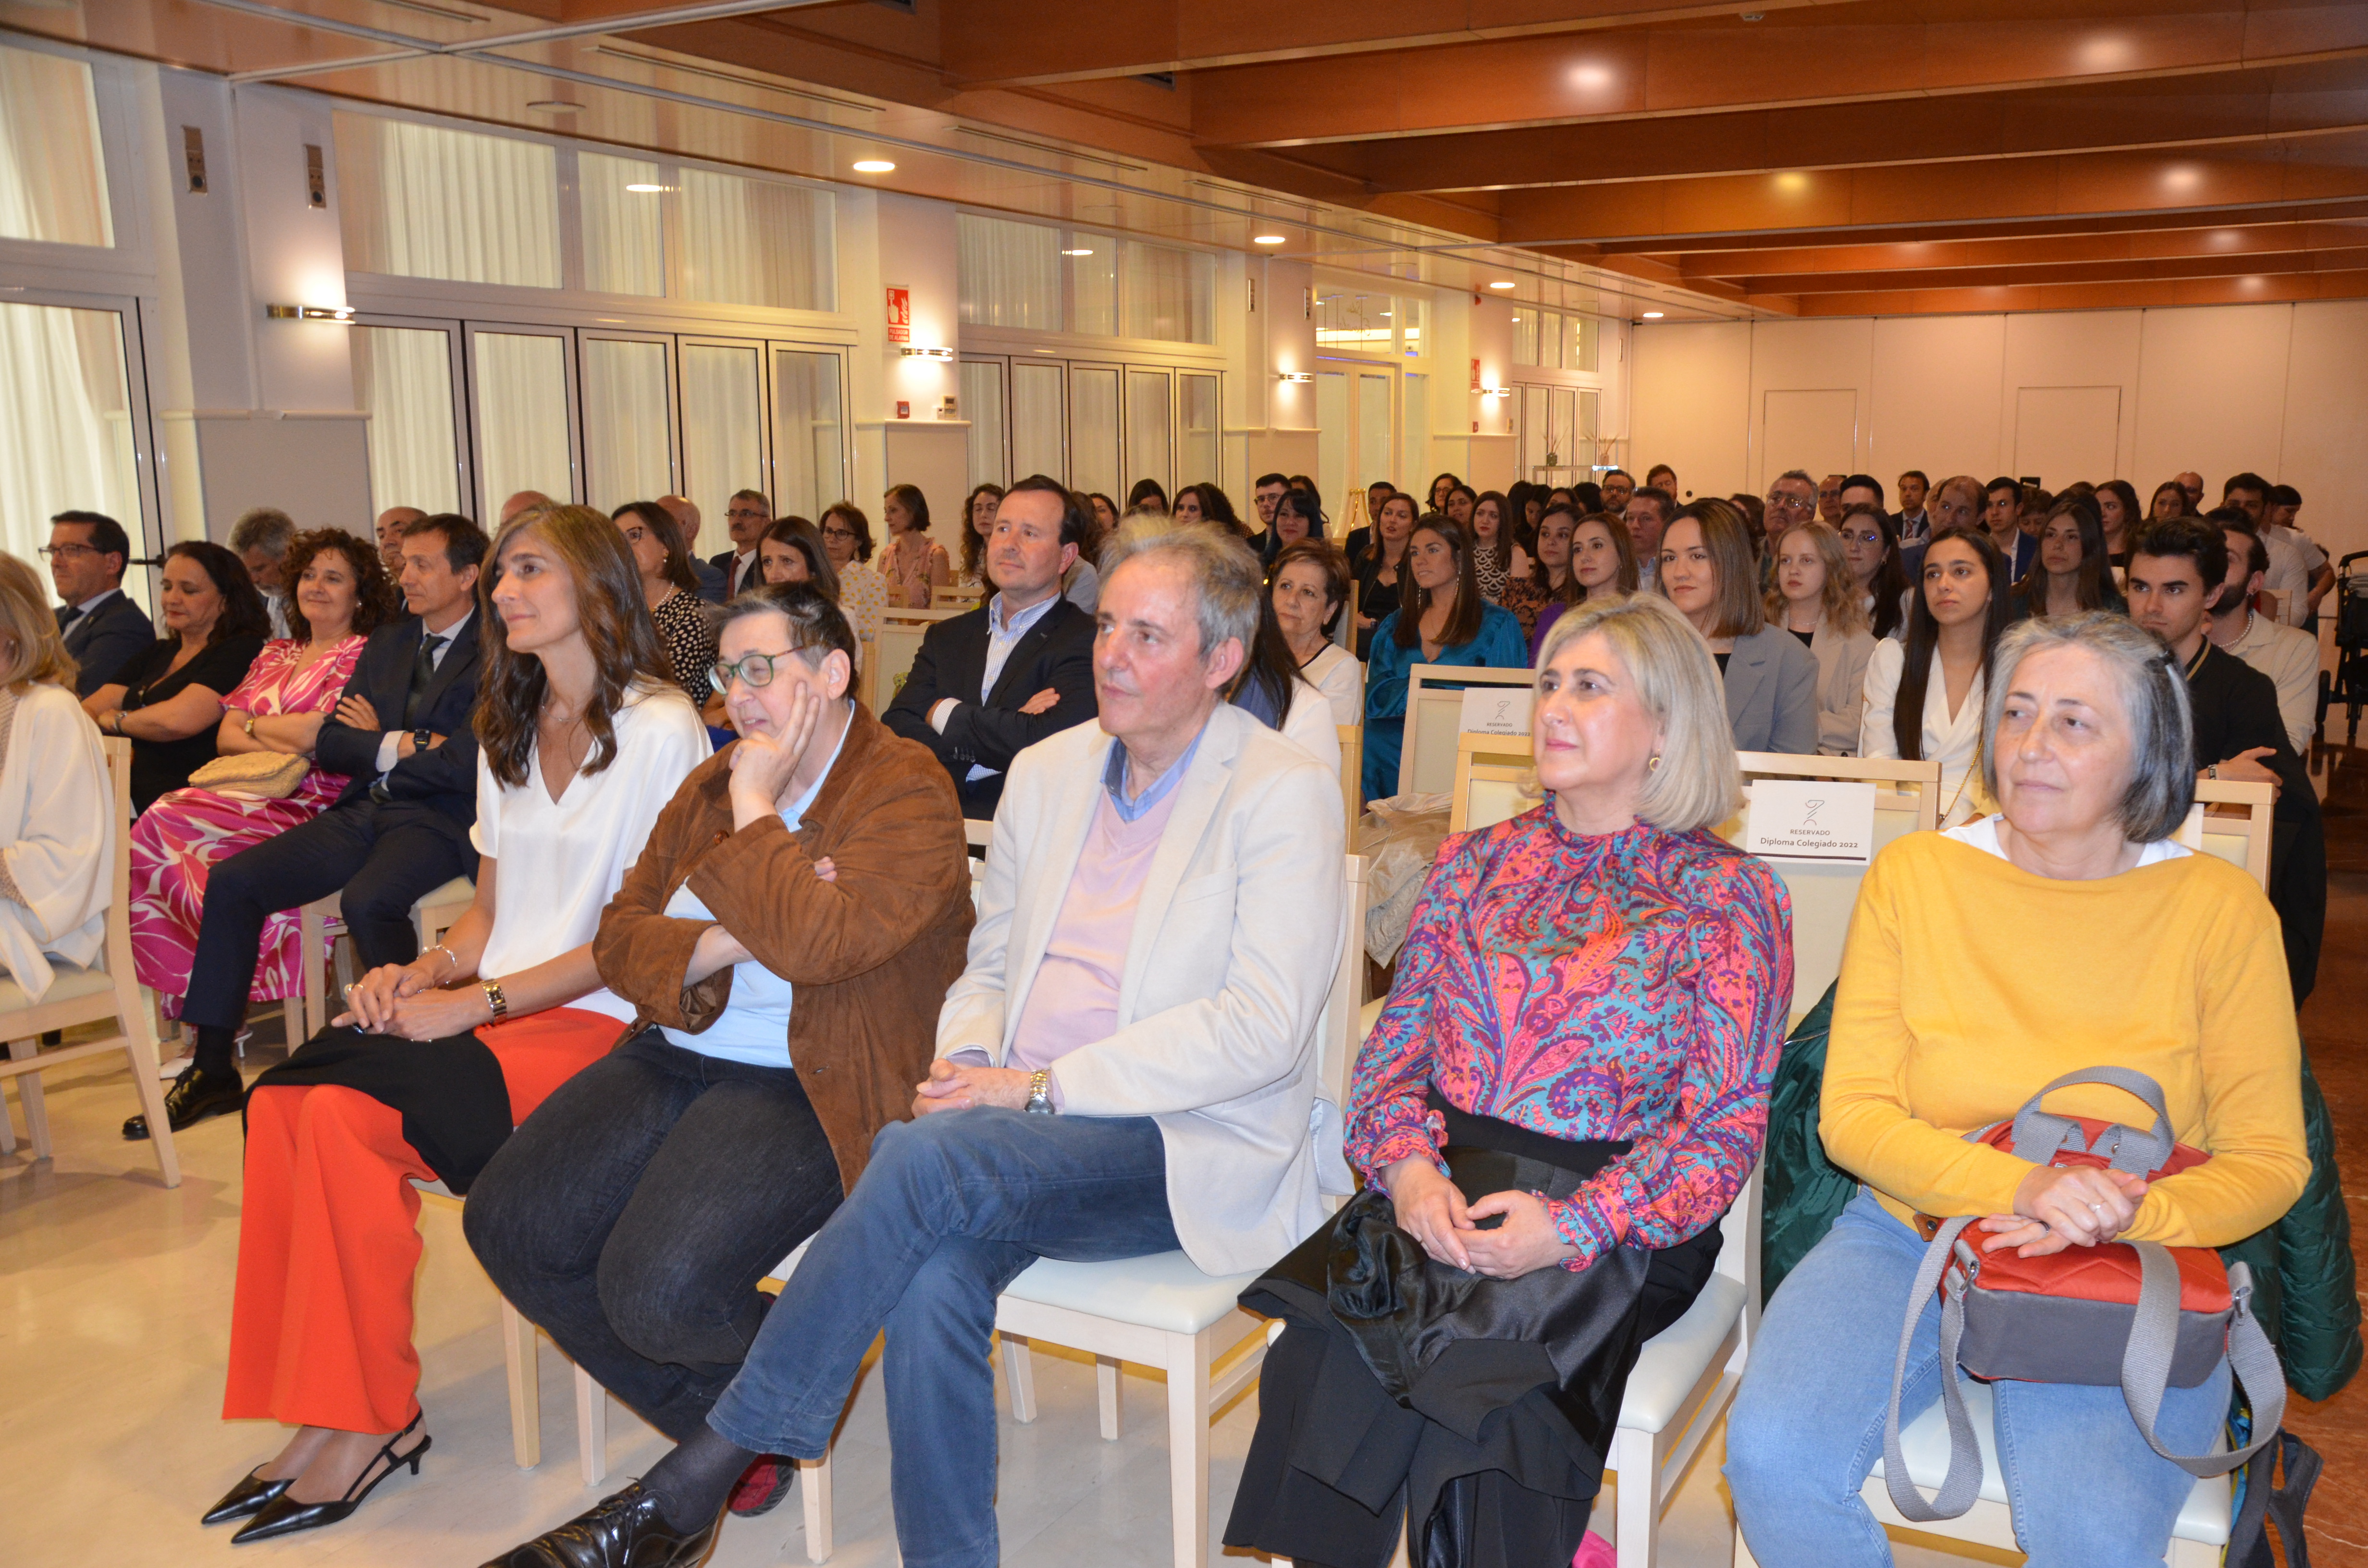 II Encuentro Farmacéutico 2023 del Colegio de Farmacéuticos de Pontevedra - Colegio de Farmacéuticos de Pontevedra